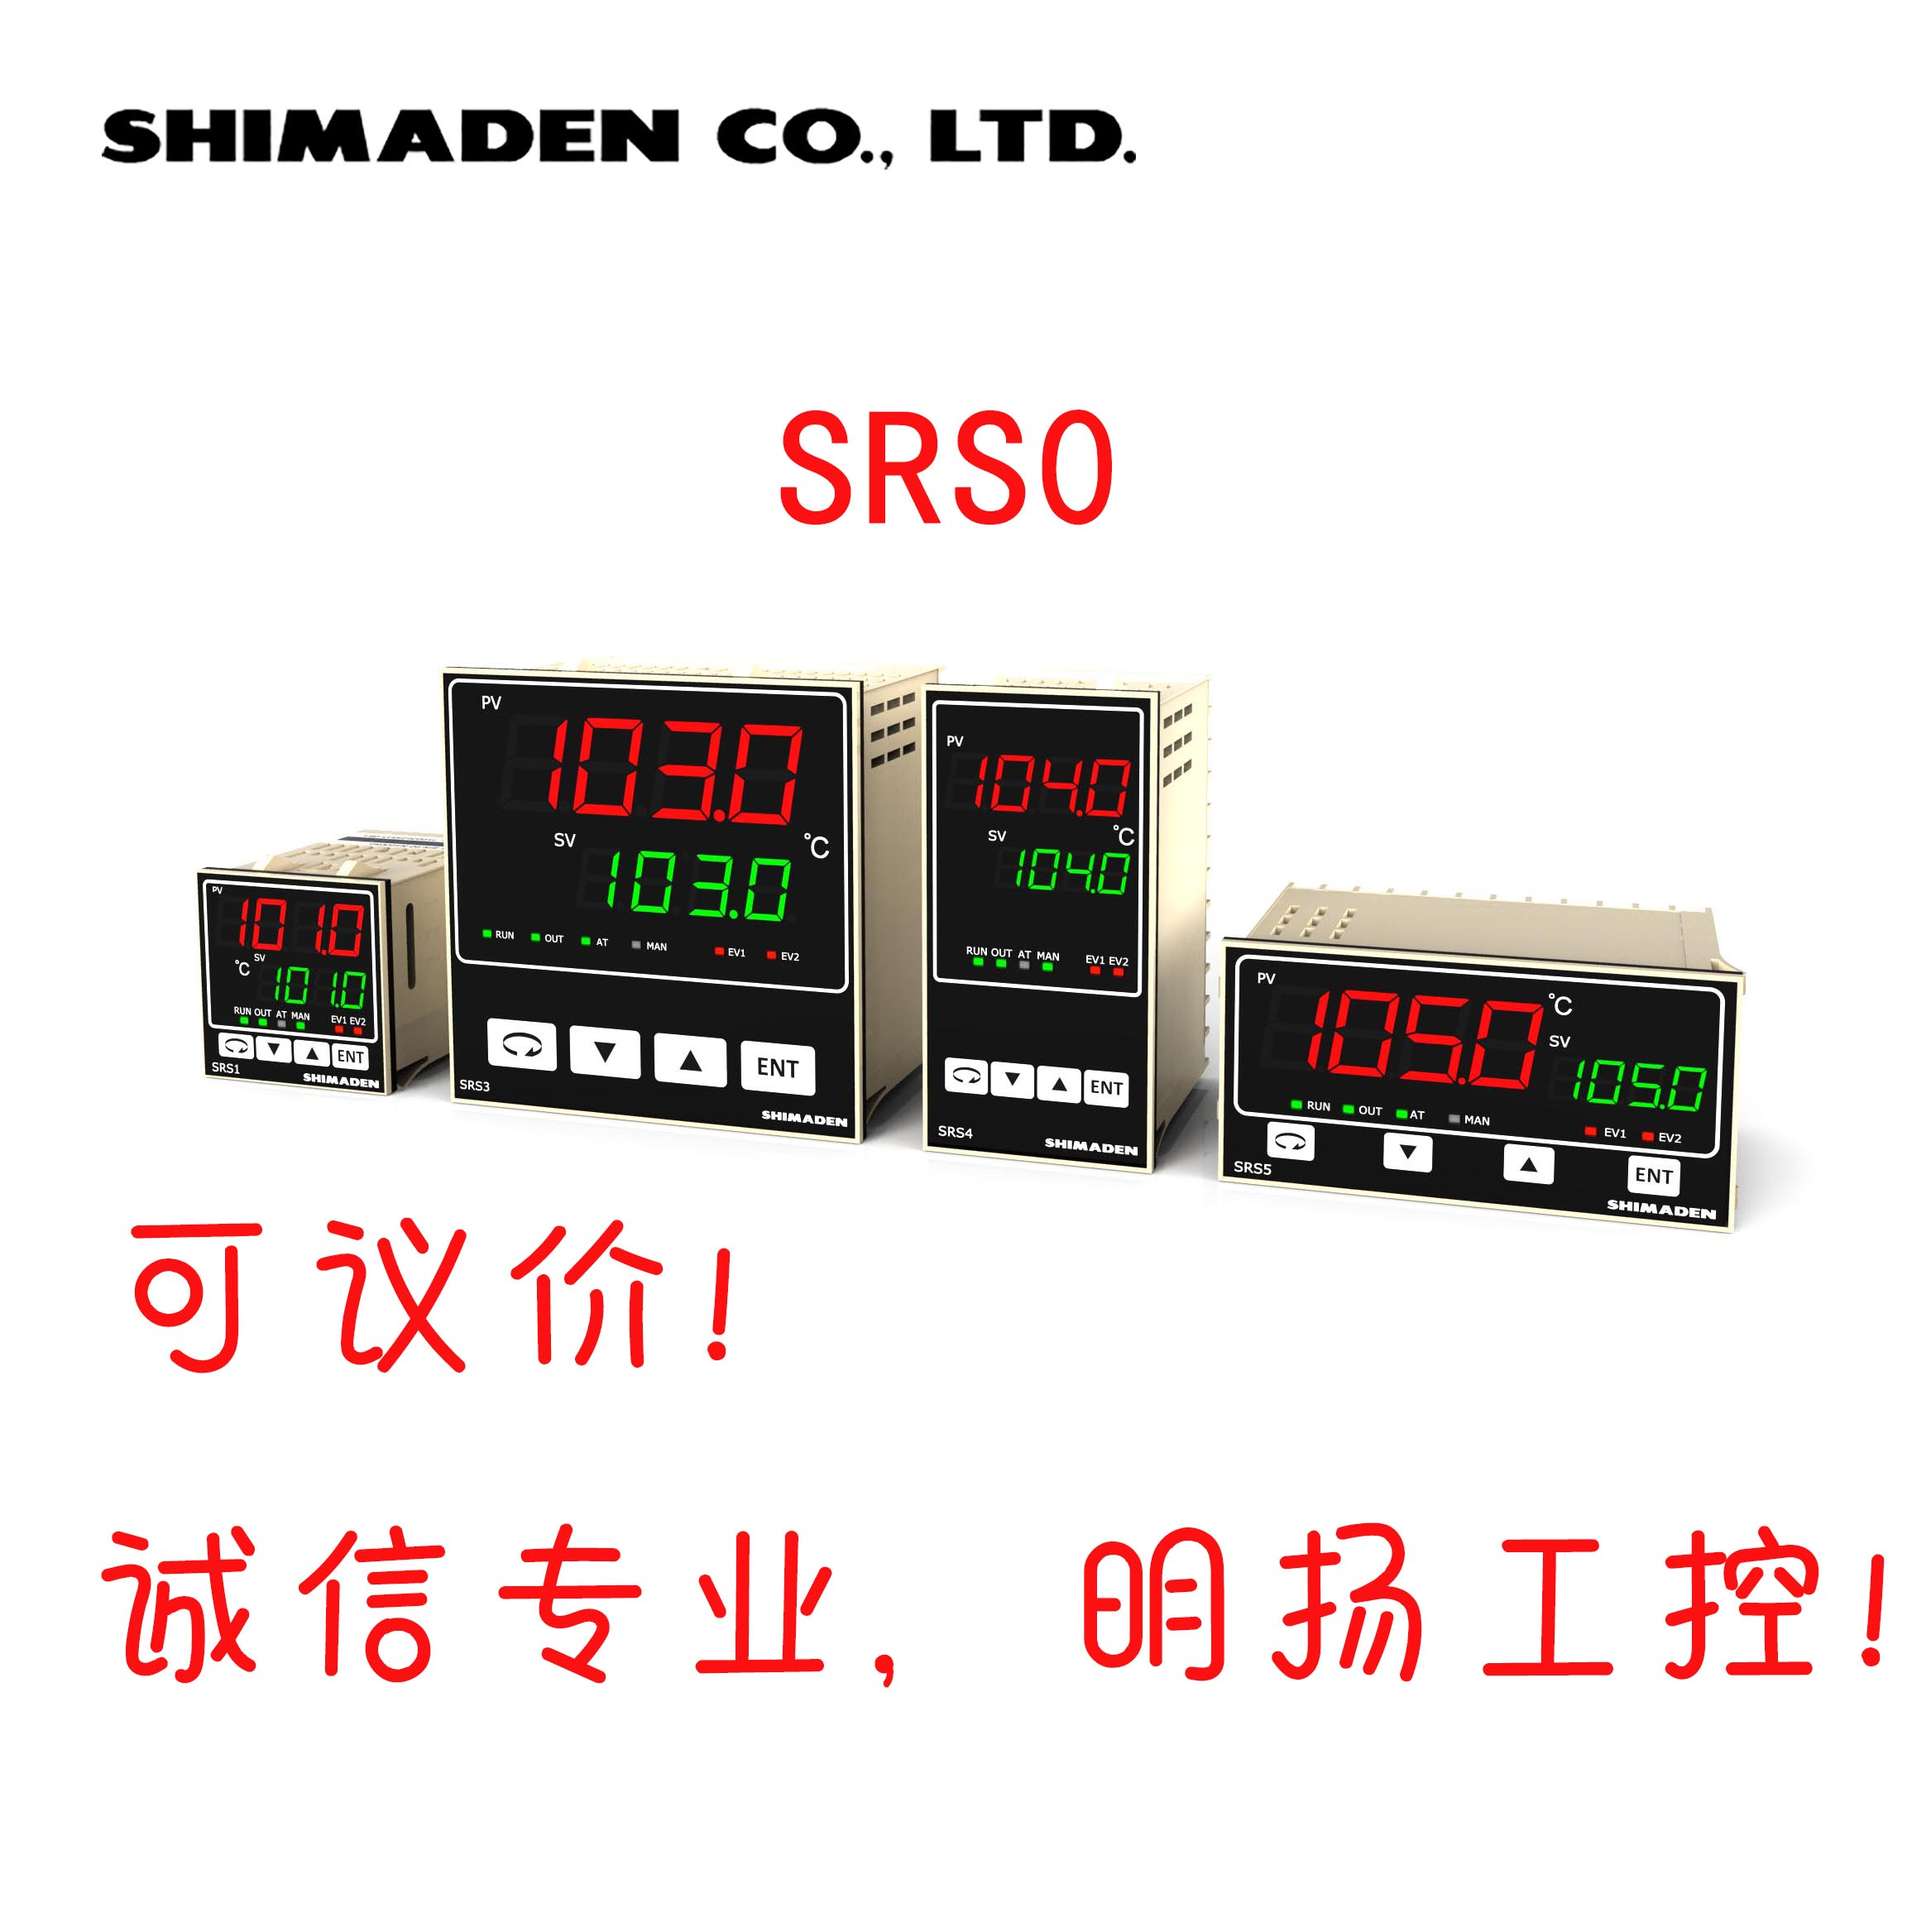 日本岛电数字控制器SRS5-Y-P00 96*48 SRS0 温控表温控器Shmaden 买工控真品请到明扬工控商城（工控网）原装正品诚信保证